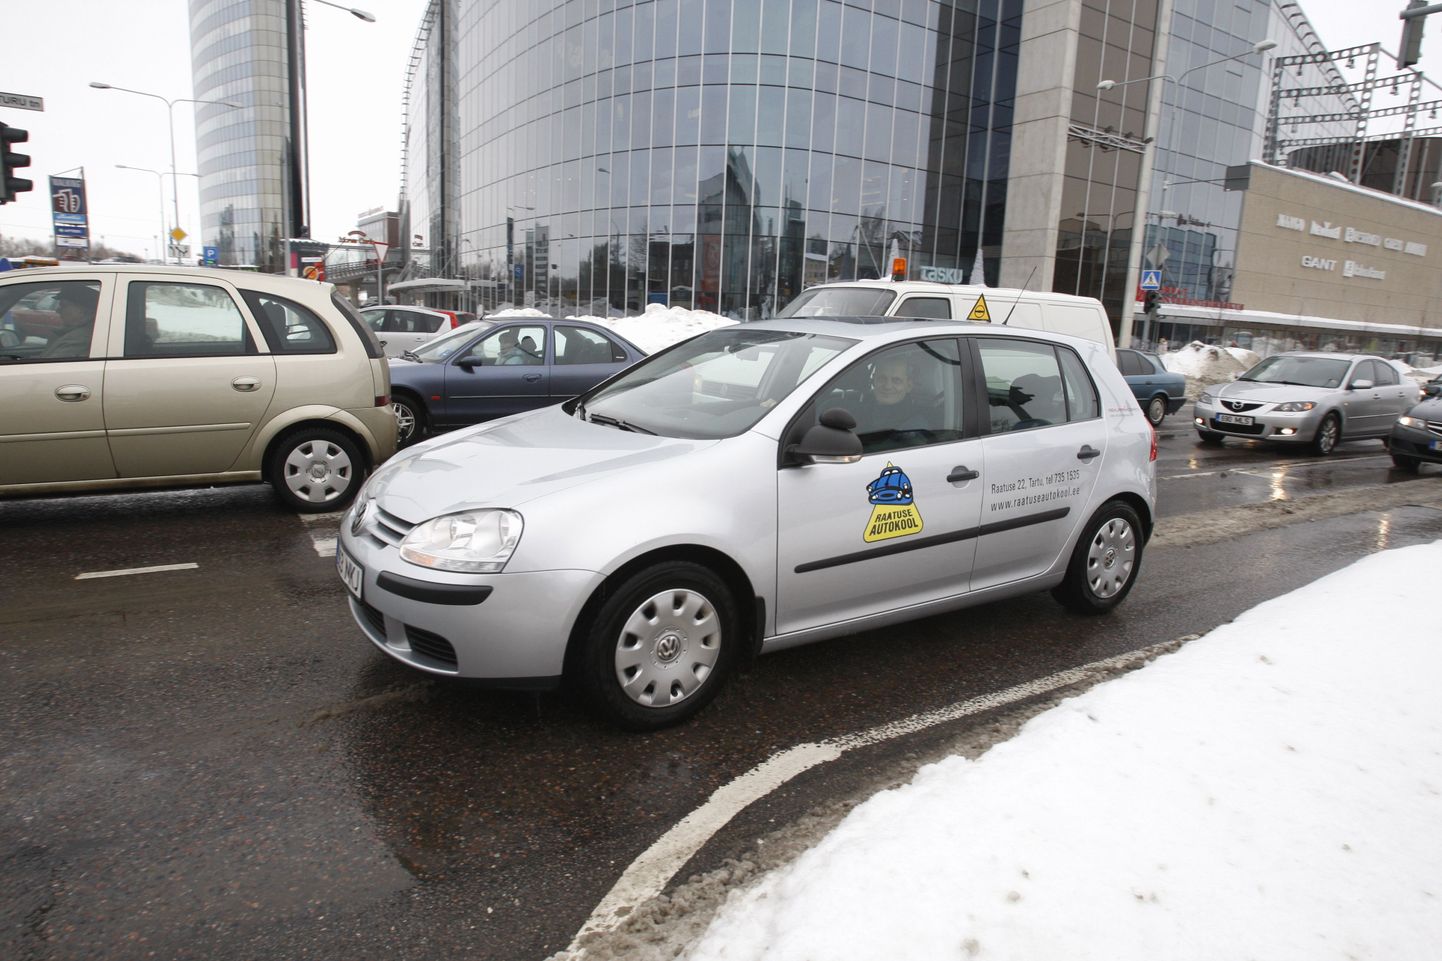 Tartu linnavalitsus plaanib tipptundidel keelata õppesõidu tegemise Tartu kesklinnas (pildil Raatuse Autokooli juhataja Tiit Ilves Turu-Riia ristmikul).